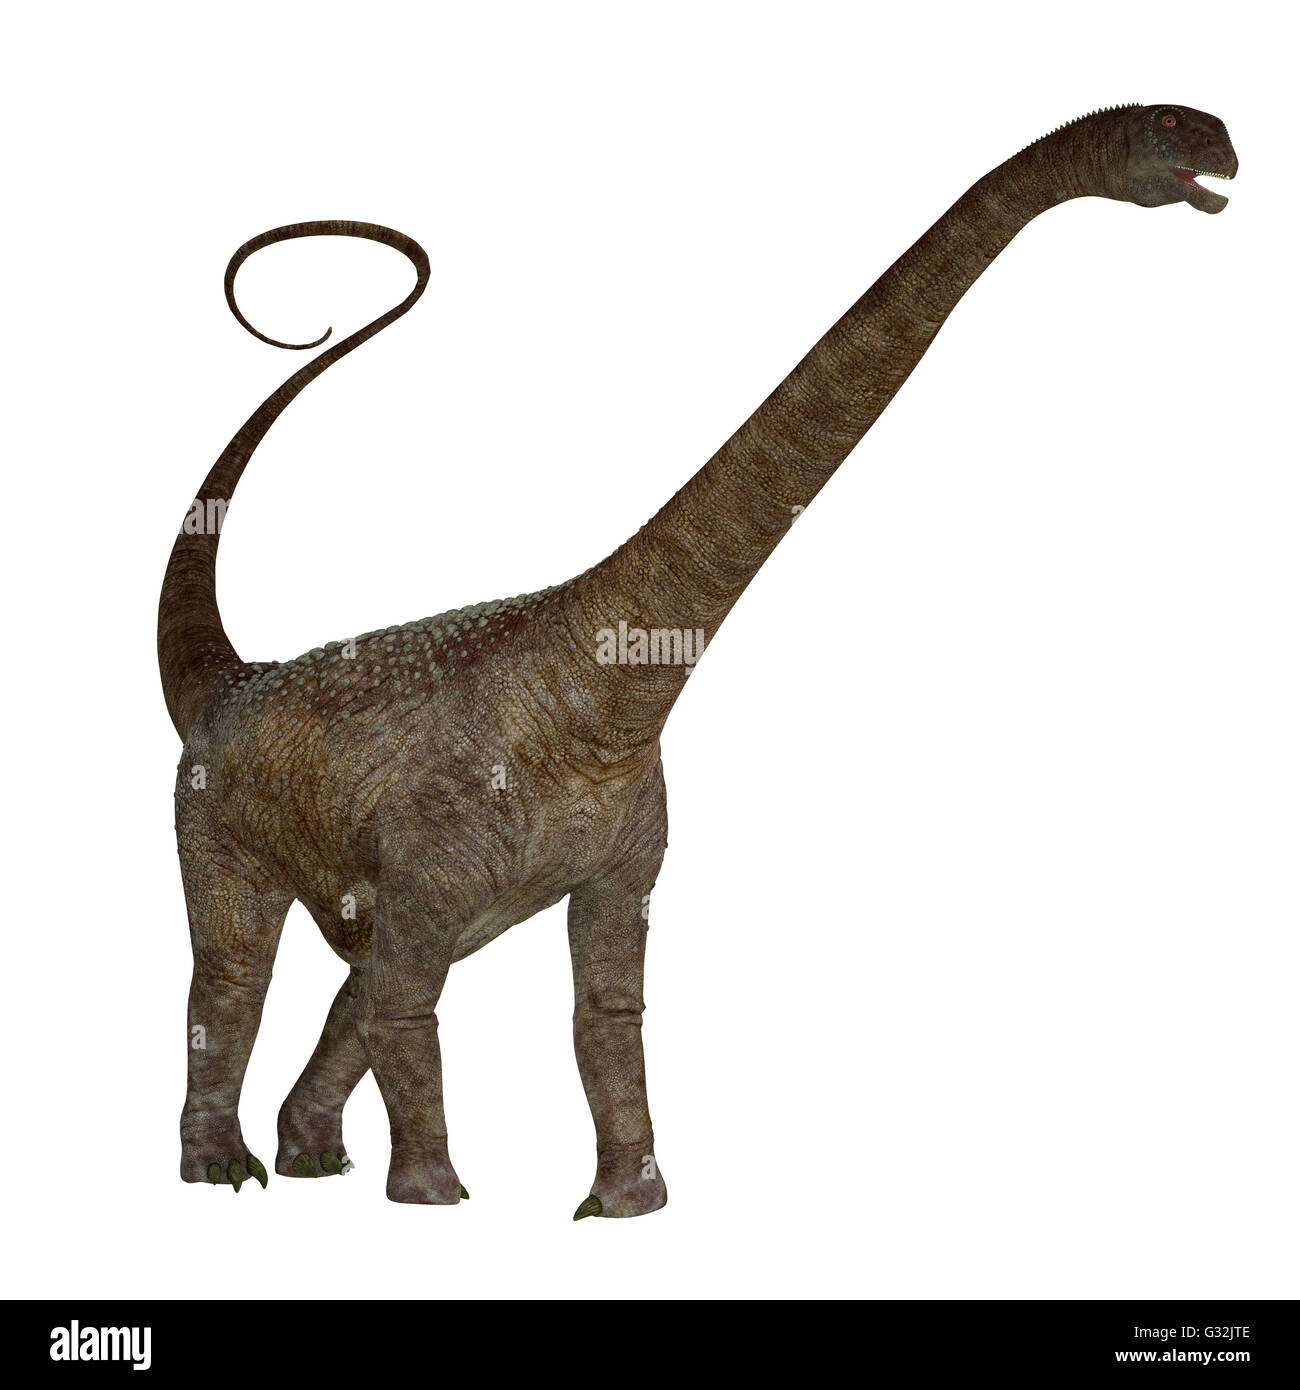 Malawisaurus war ein Pflanzenfresser Sauropod Dinosaurier, der in Afrika während der Kreidezeit lebte. Stockfoto